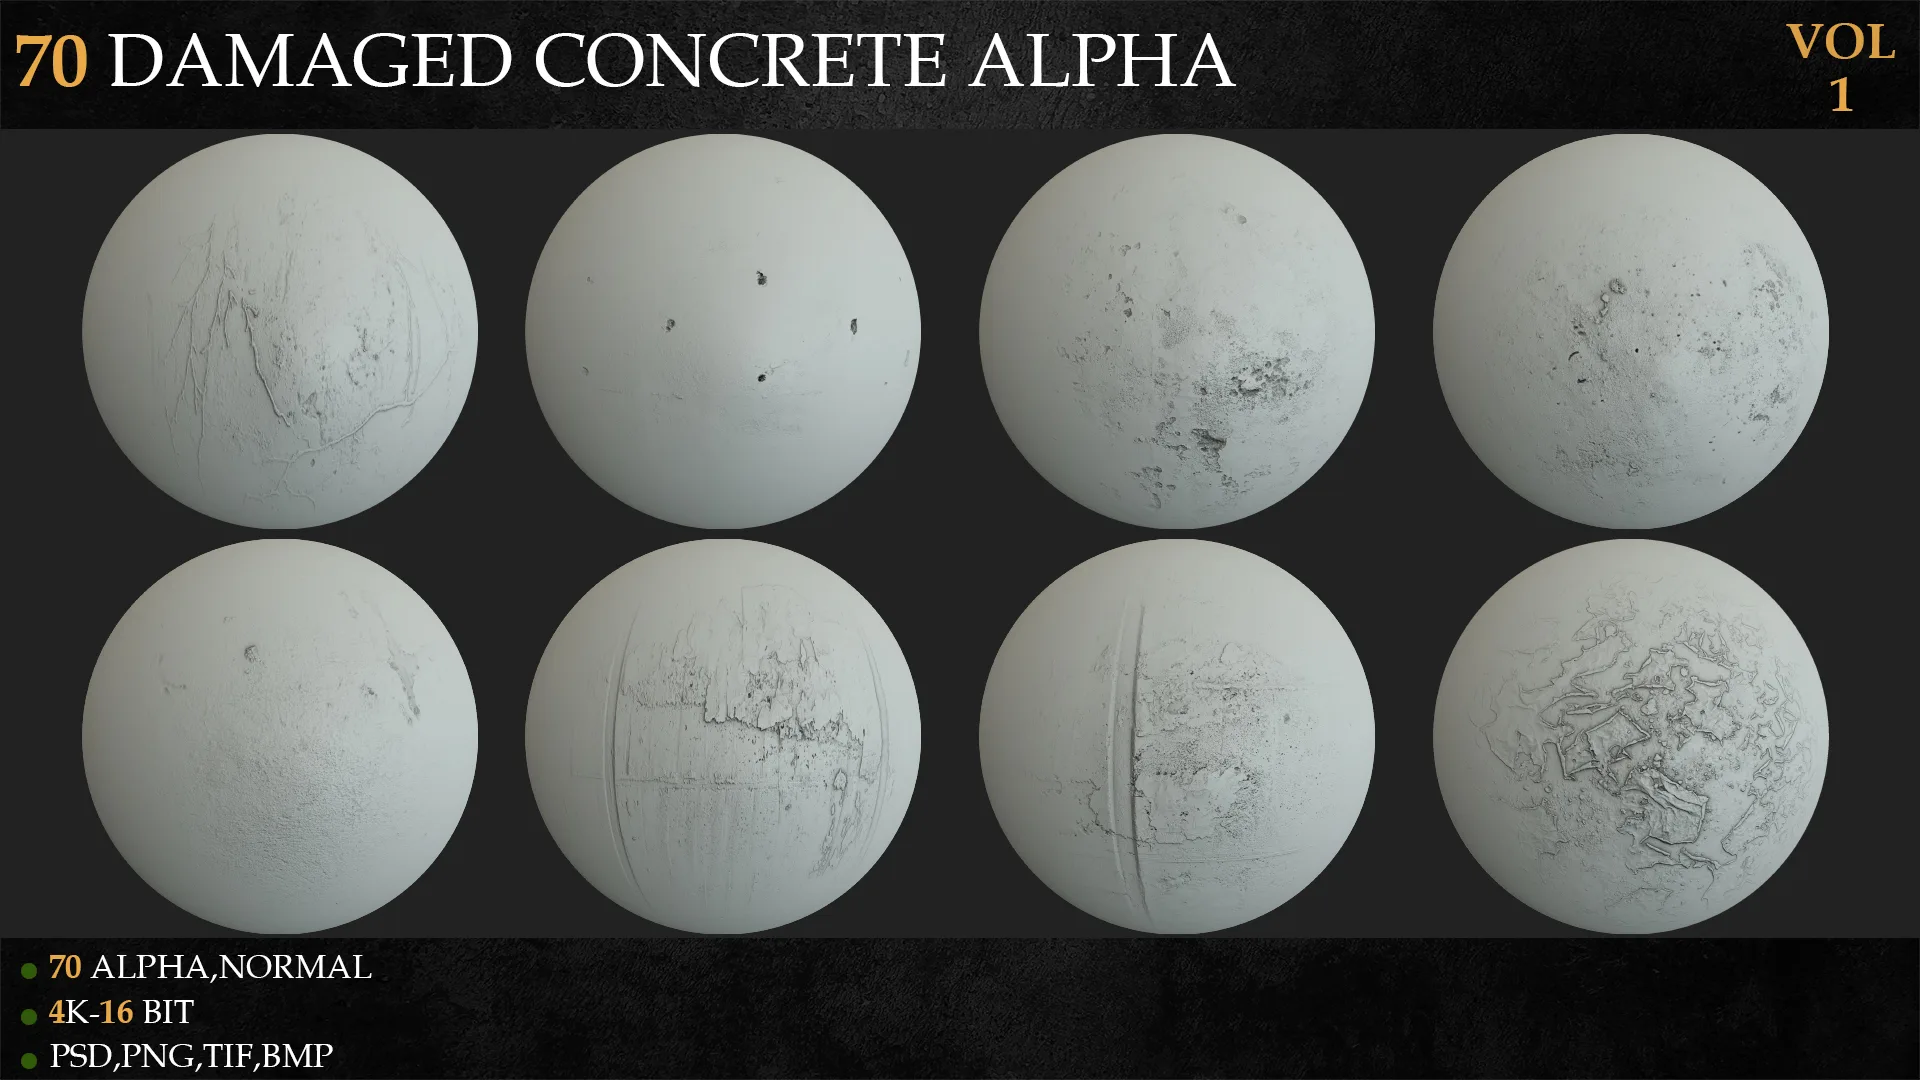 70 Damaged Concrete Alpha-VOL 1